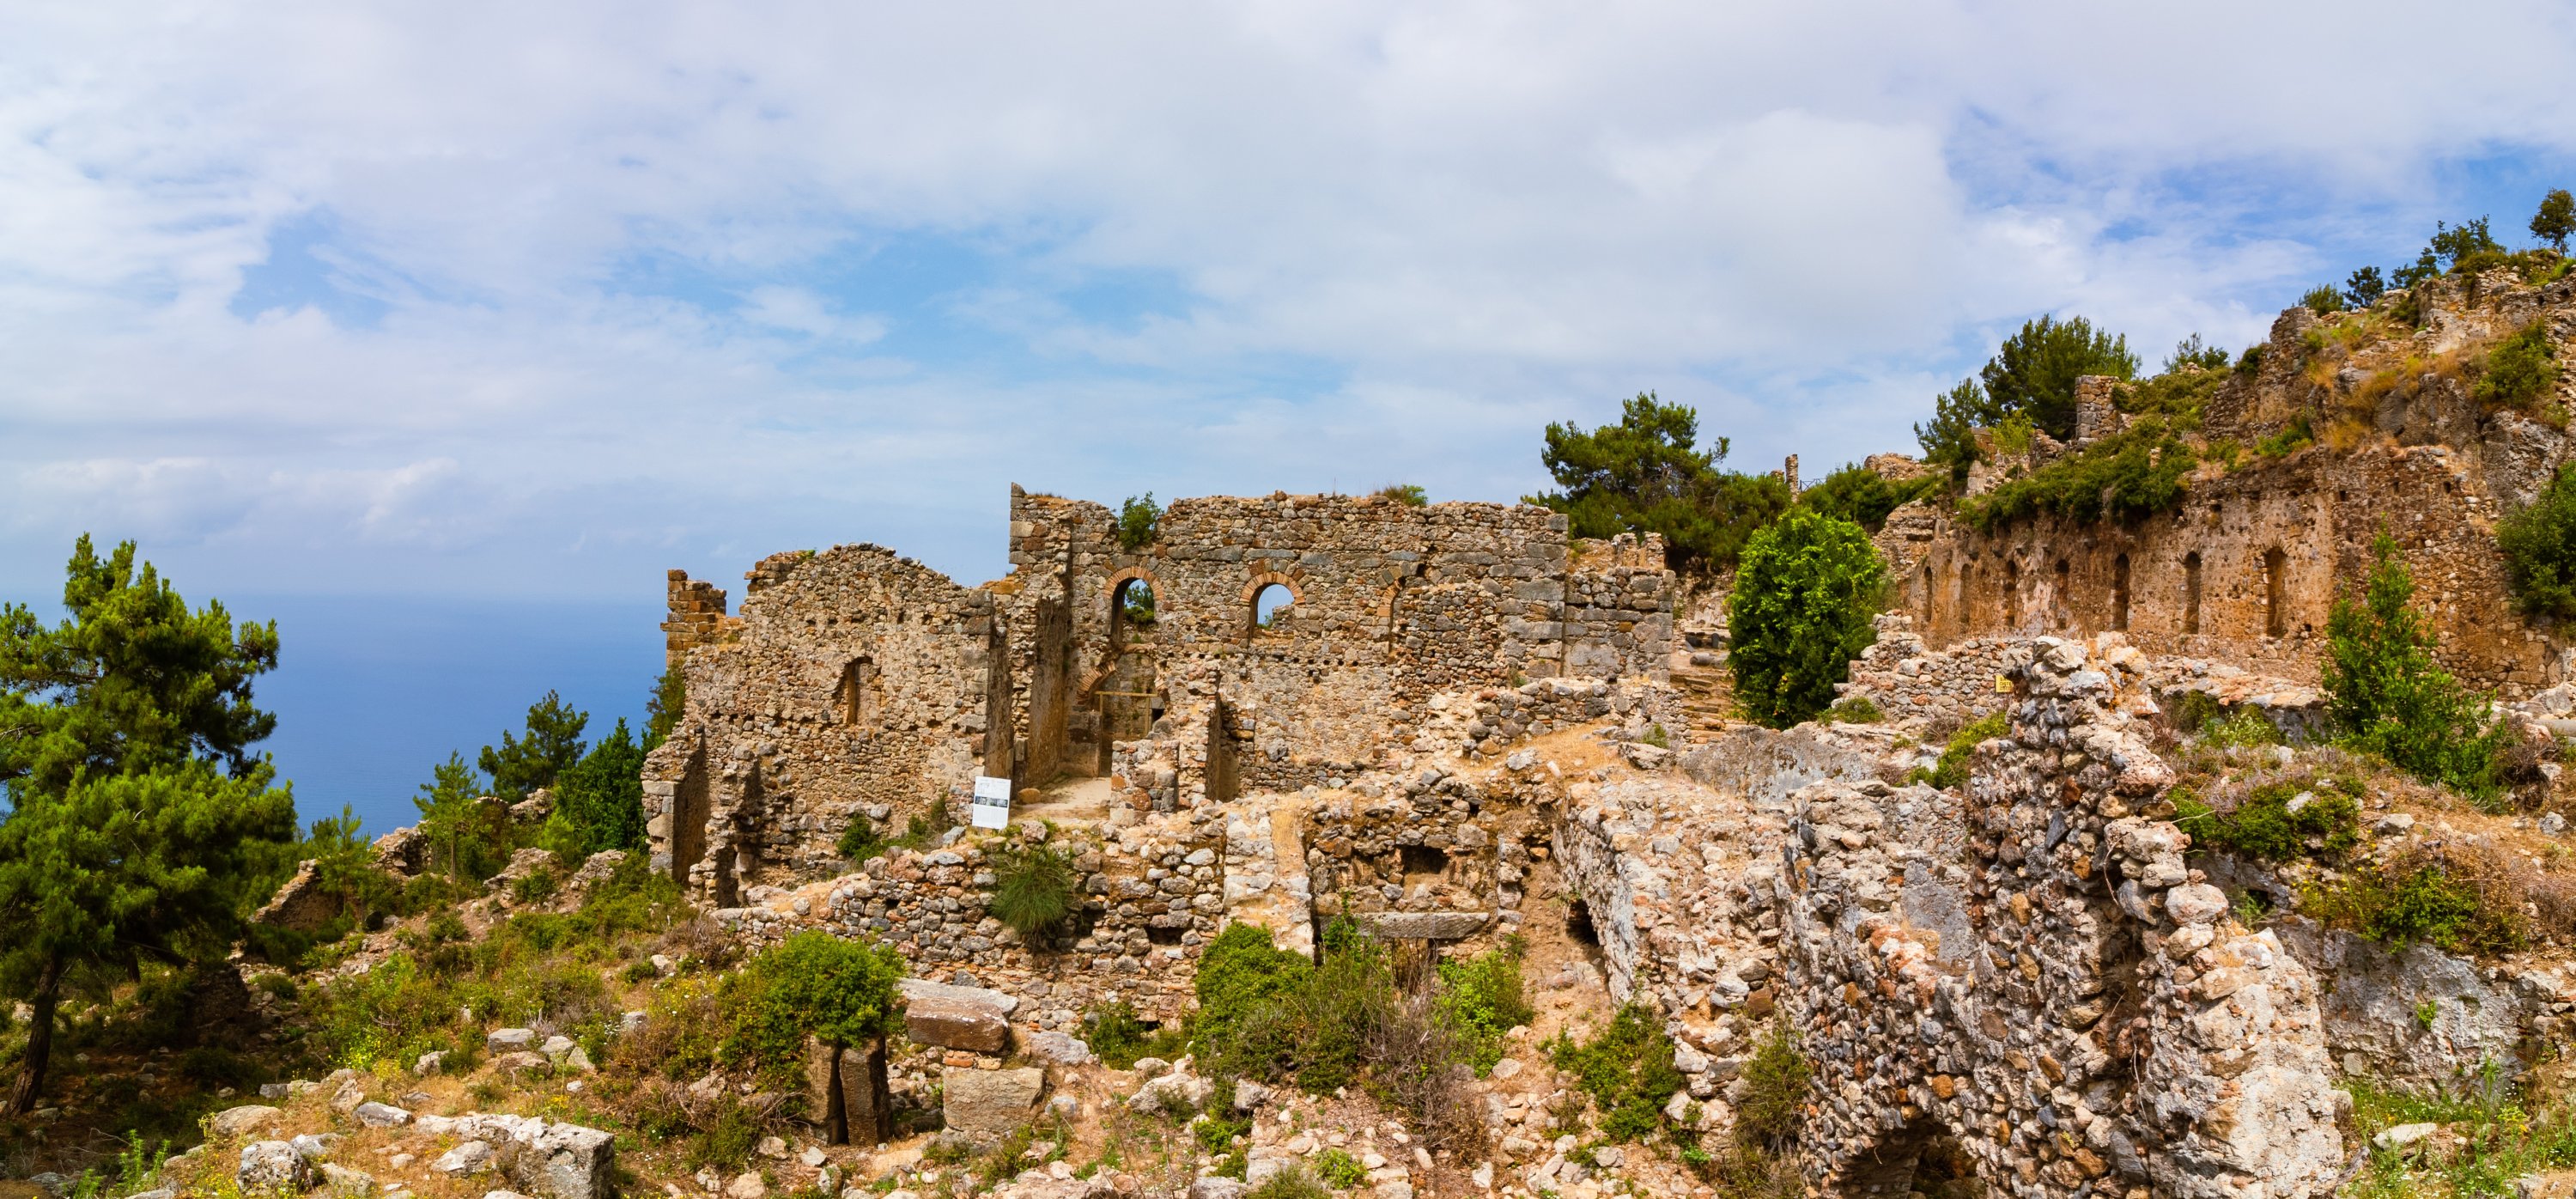 Pemandangan dari reruntuhan kota kuno Syedra, Antalya, Turki selatan.  (Shutterstock)